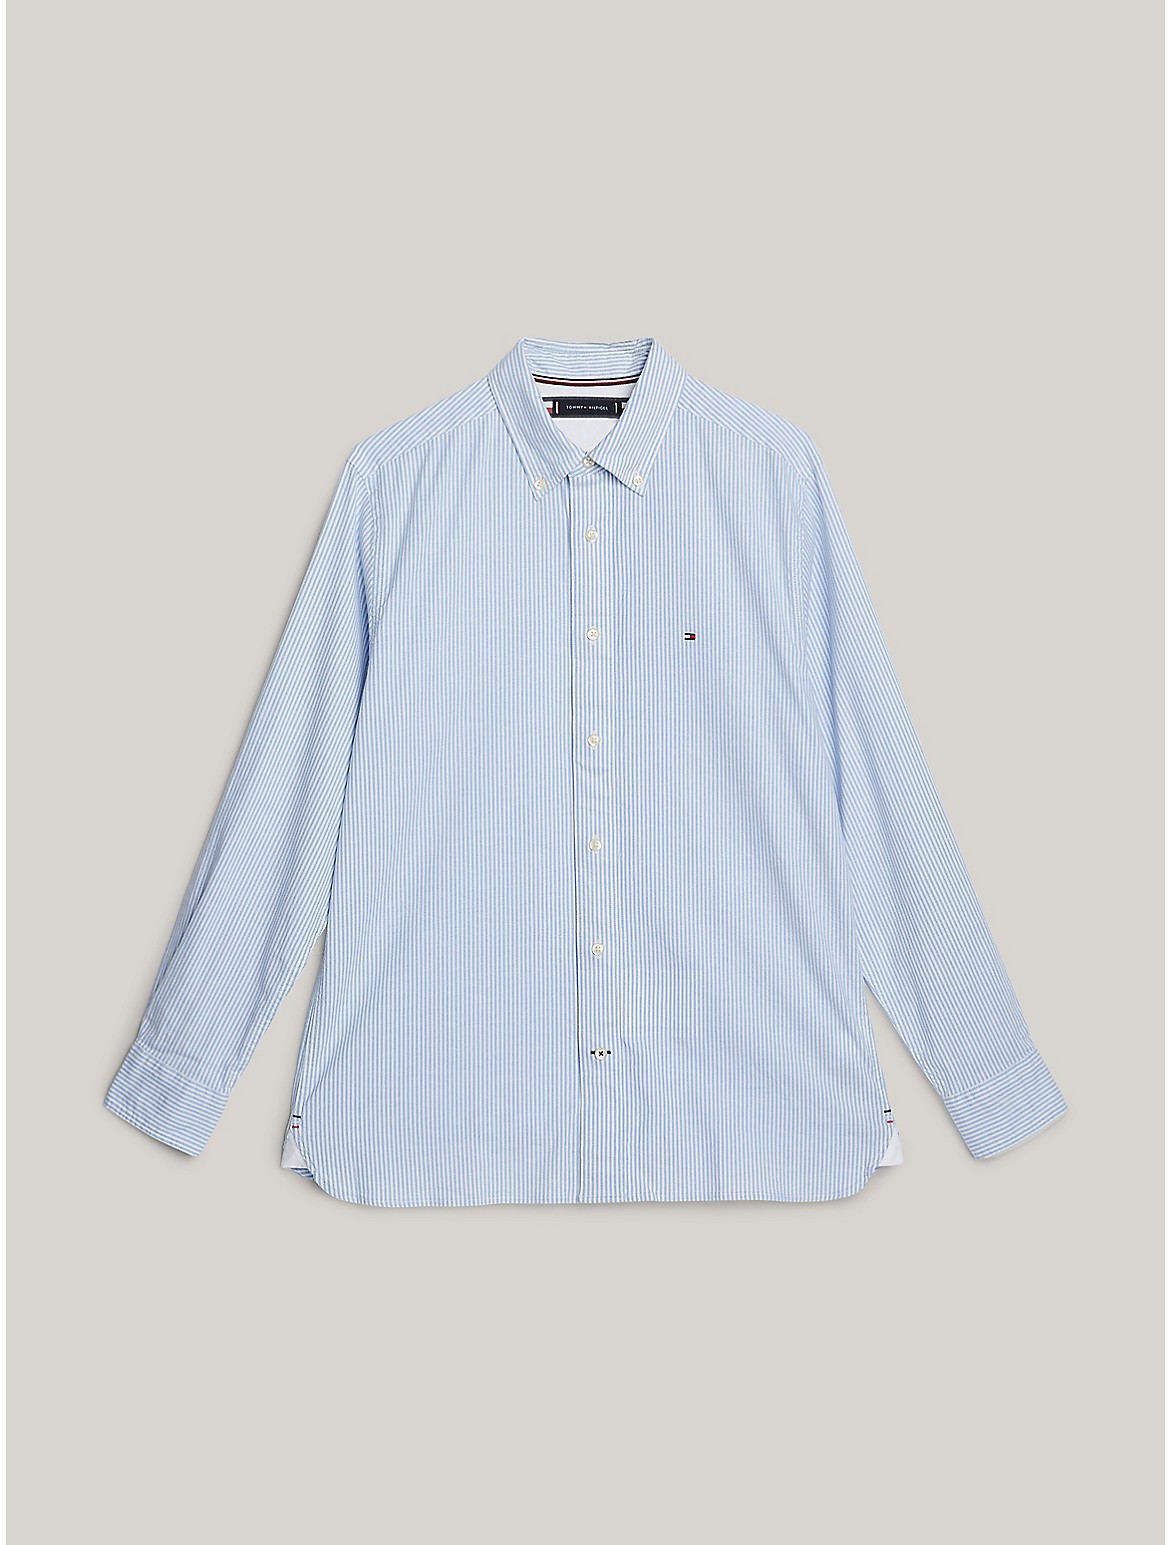 Shop Tommy Hilfiger Regular Fit 1985 Thflex Shirt In Copenhagen Blue / White